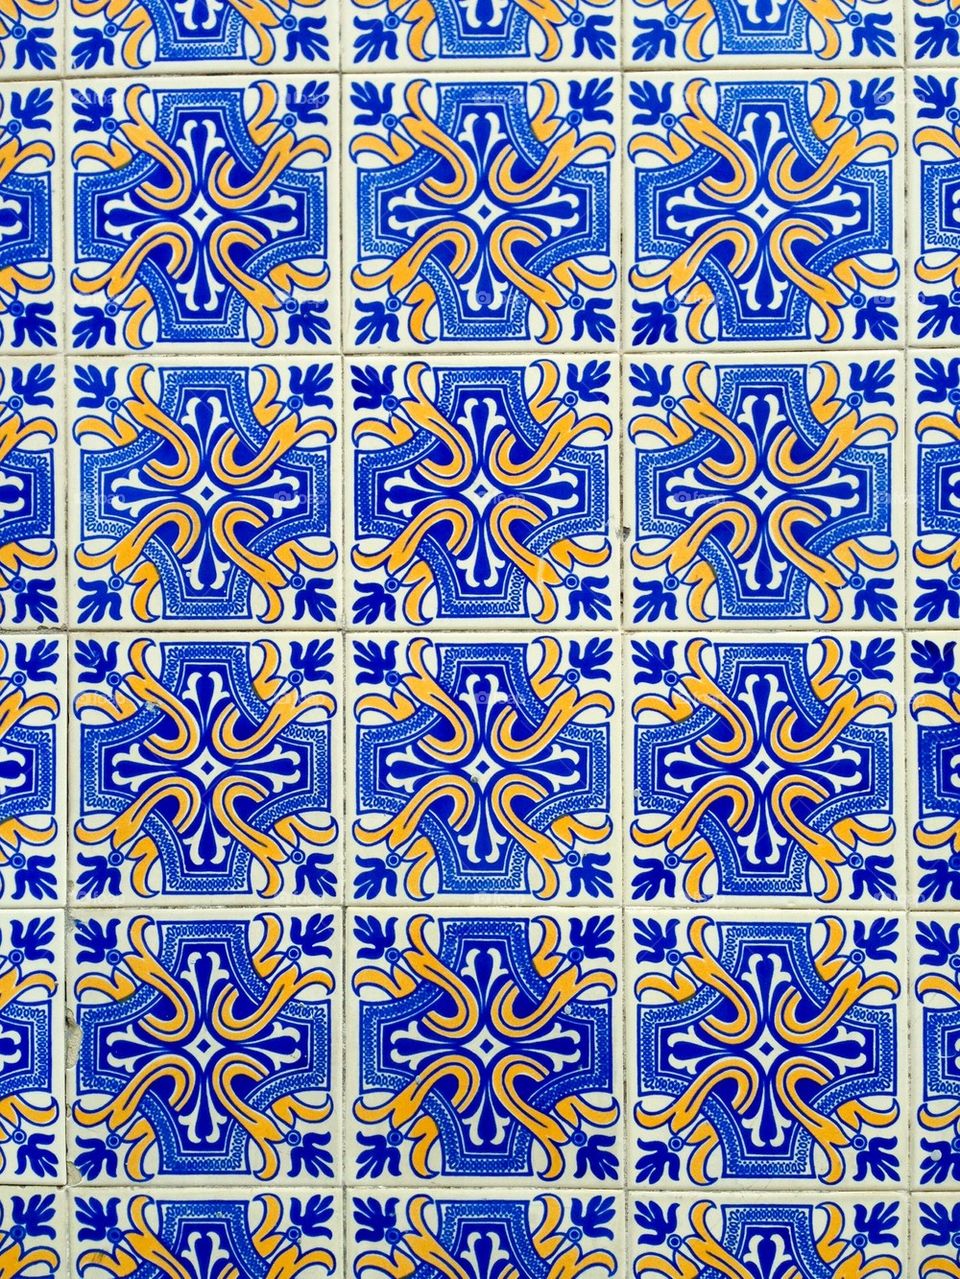 Portuguese tiles in lisbon 